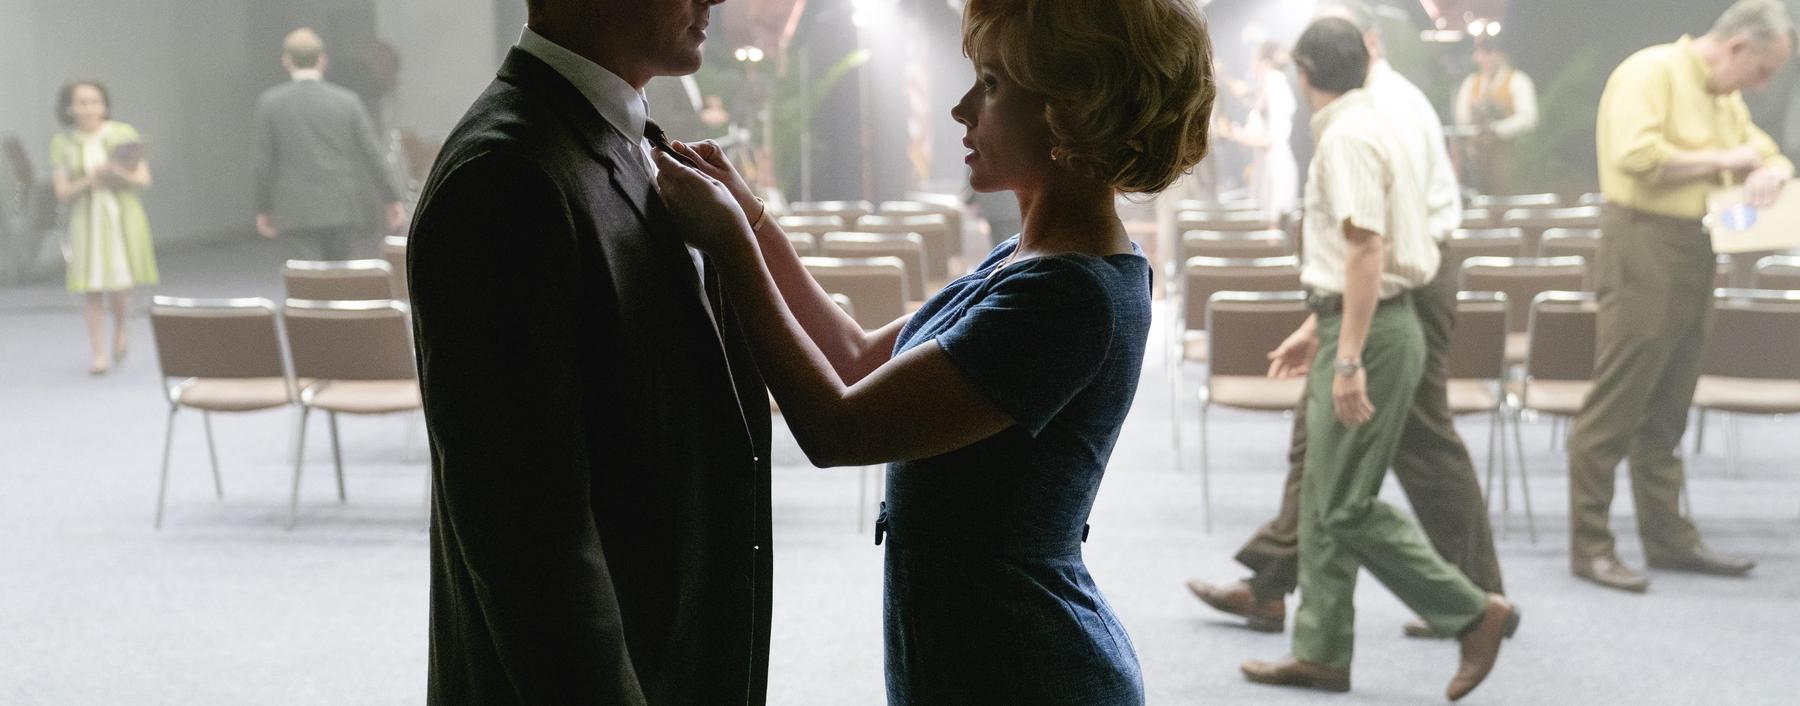 Sie lieben und bekriegen sich: Scarlett Johansson und Channing Tatum in der Romantic Comedy „To the Moon“, die ab 12. Juli im Kino läuft.